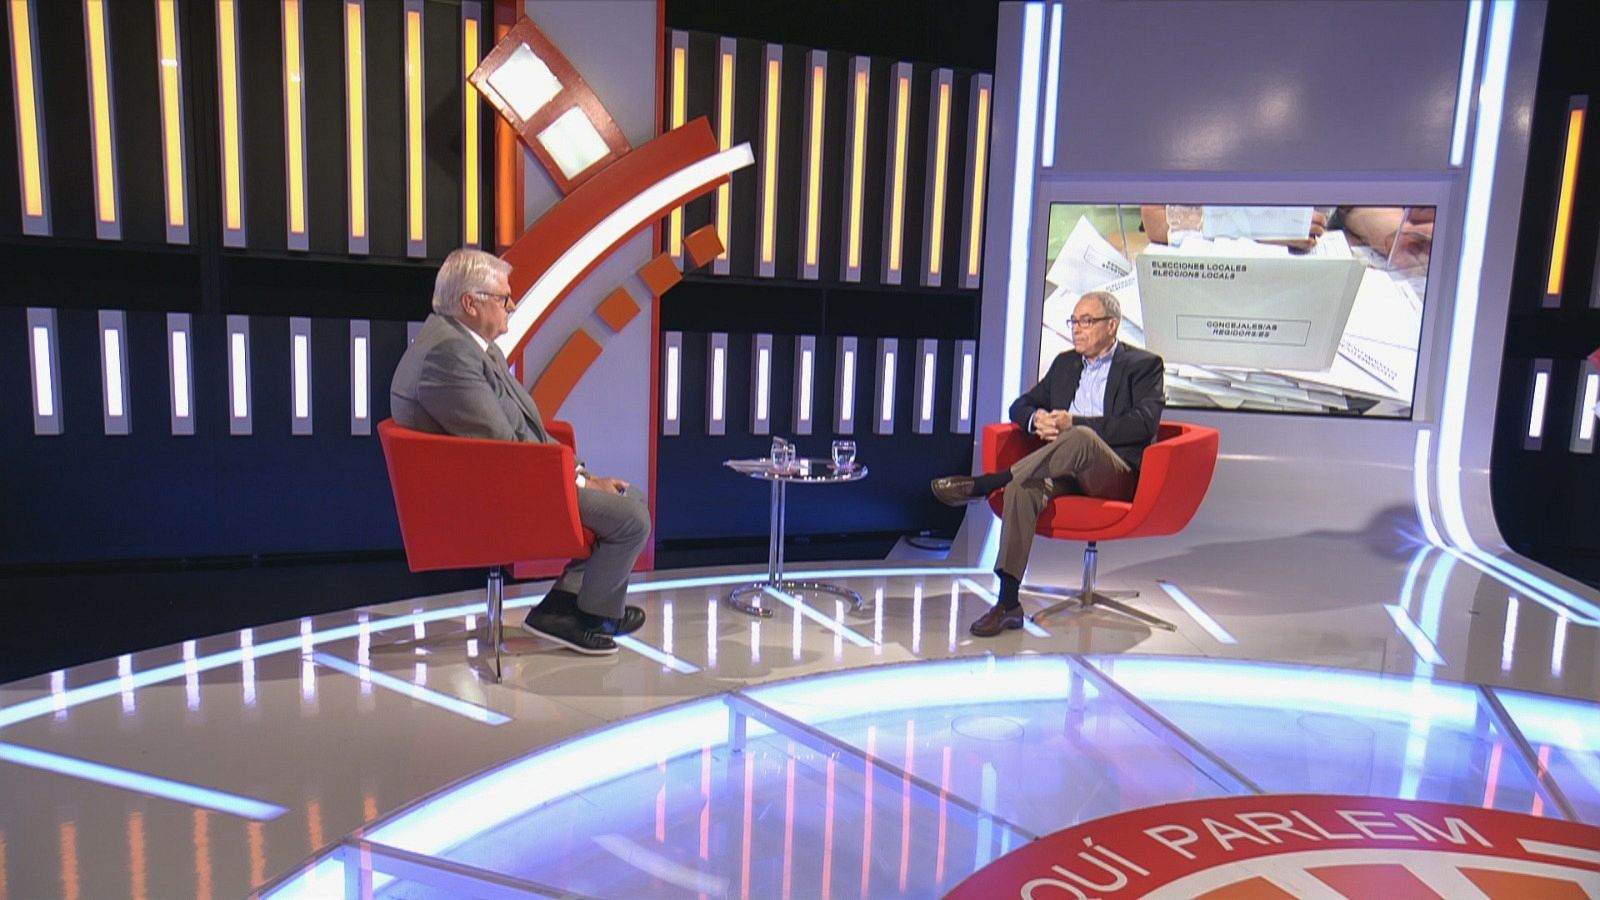 Lluís Falgàs i Carles Castro asseguts a les butaques vermelles del plató de l''Aquí Parlem'